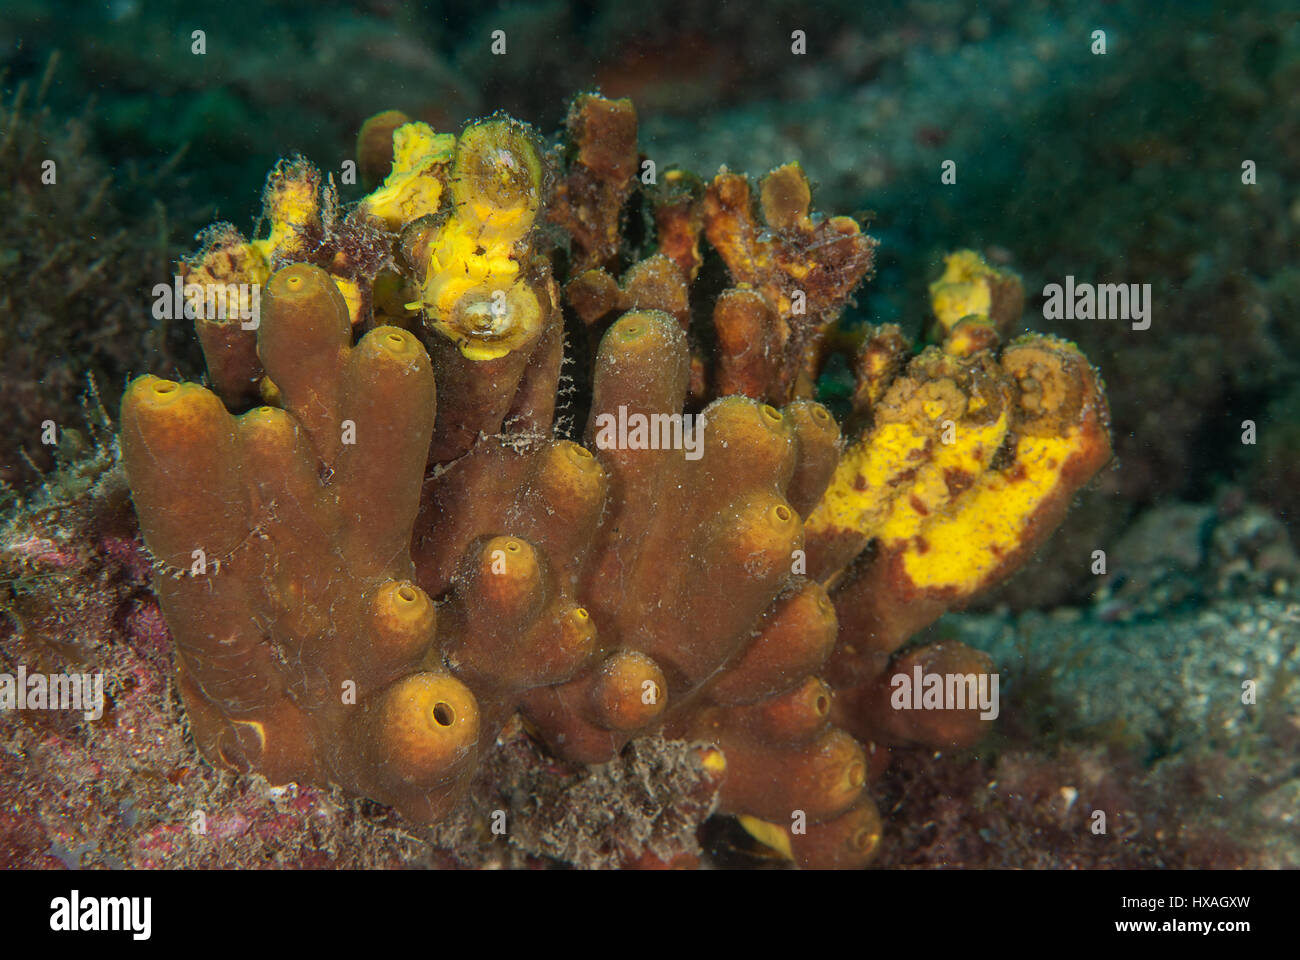 Golden sea sponge, Verongia aerophoba, Tenerife, Canarian Islands, Spain, Atlantic Ocean Stock Photo